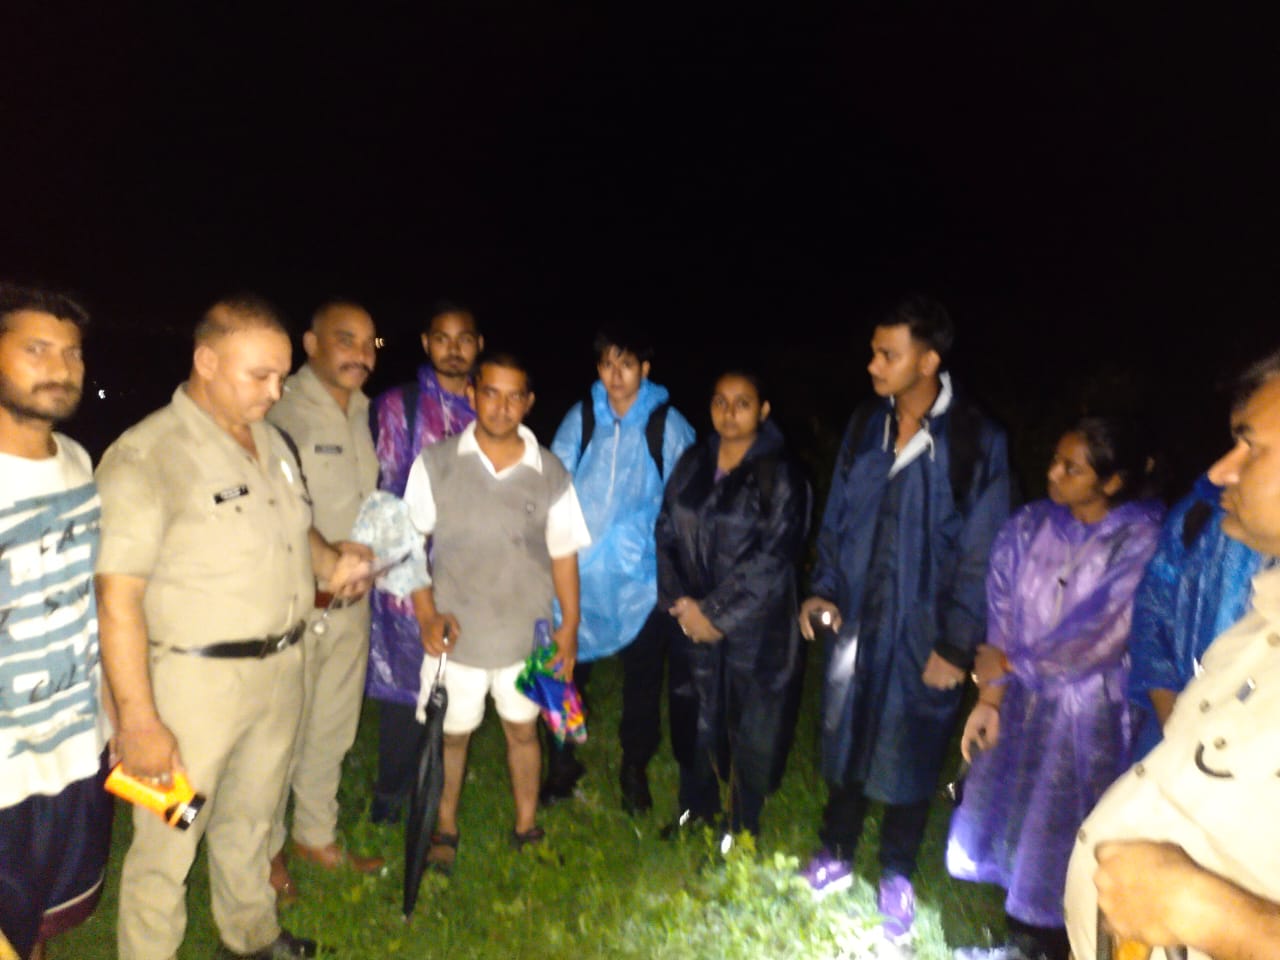 कोटी भद्र राज मंदिर मार्ग पर ट्रैकिंग हेतु गए 6 छात्रों के वापसी में तेज बारिश तथा मार्ग भटकने पर सहसपुर पुलिस द्वारा क्या गया रेस्क्यू